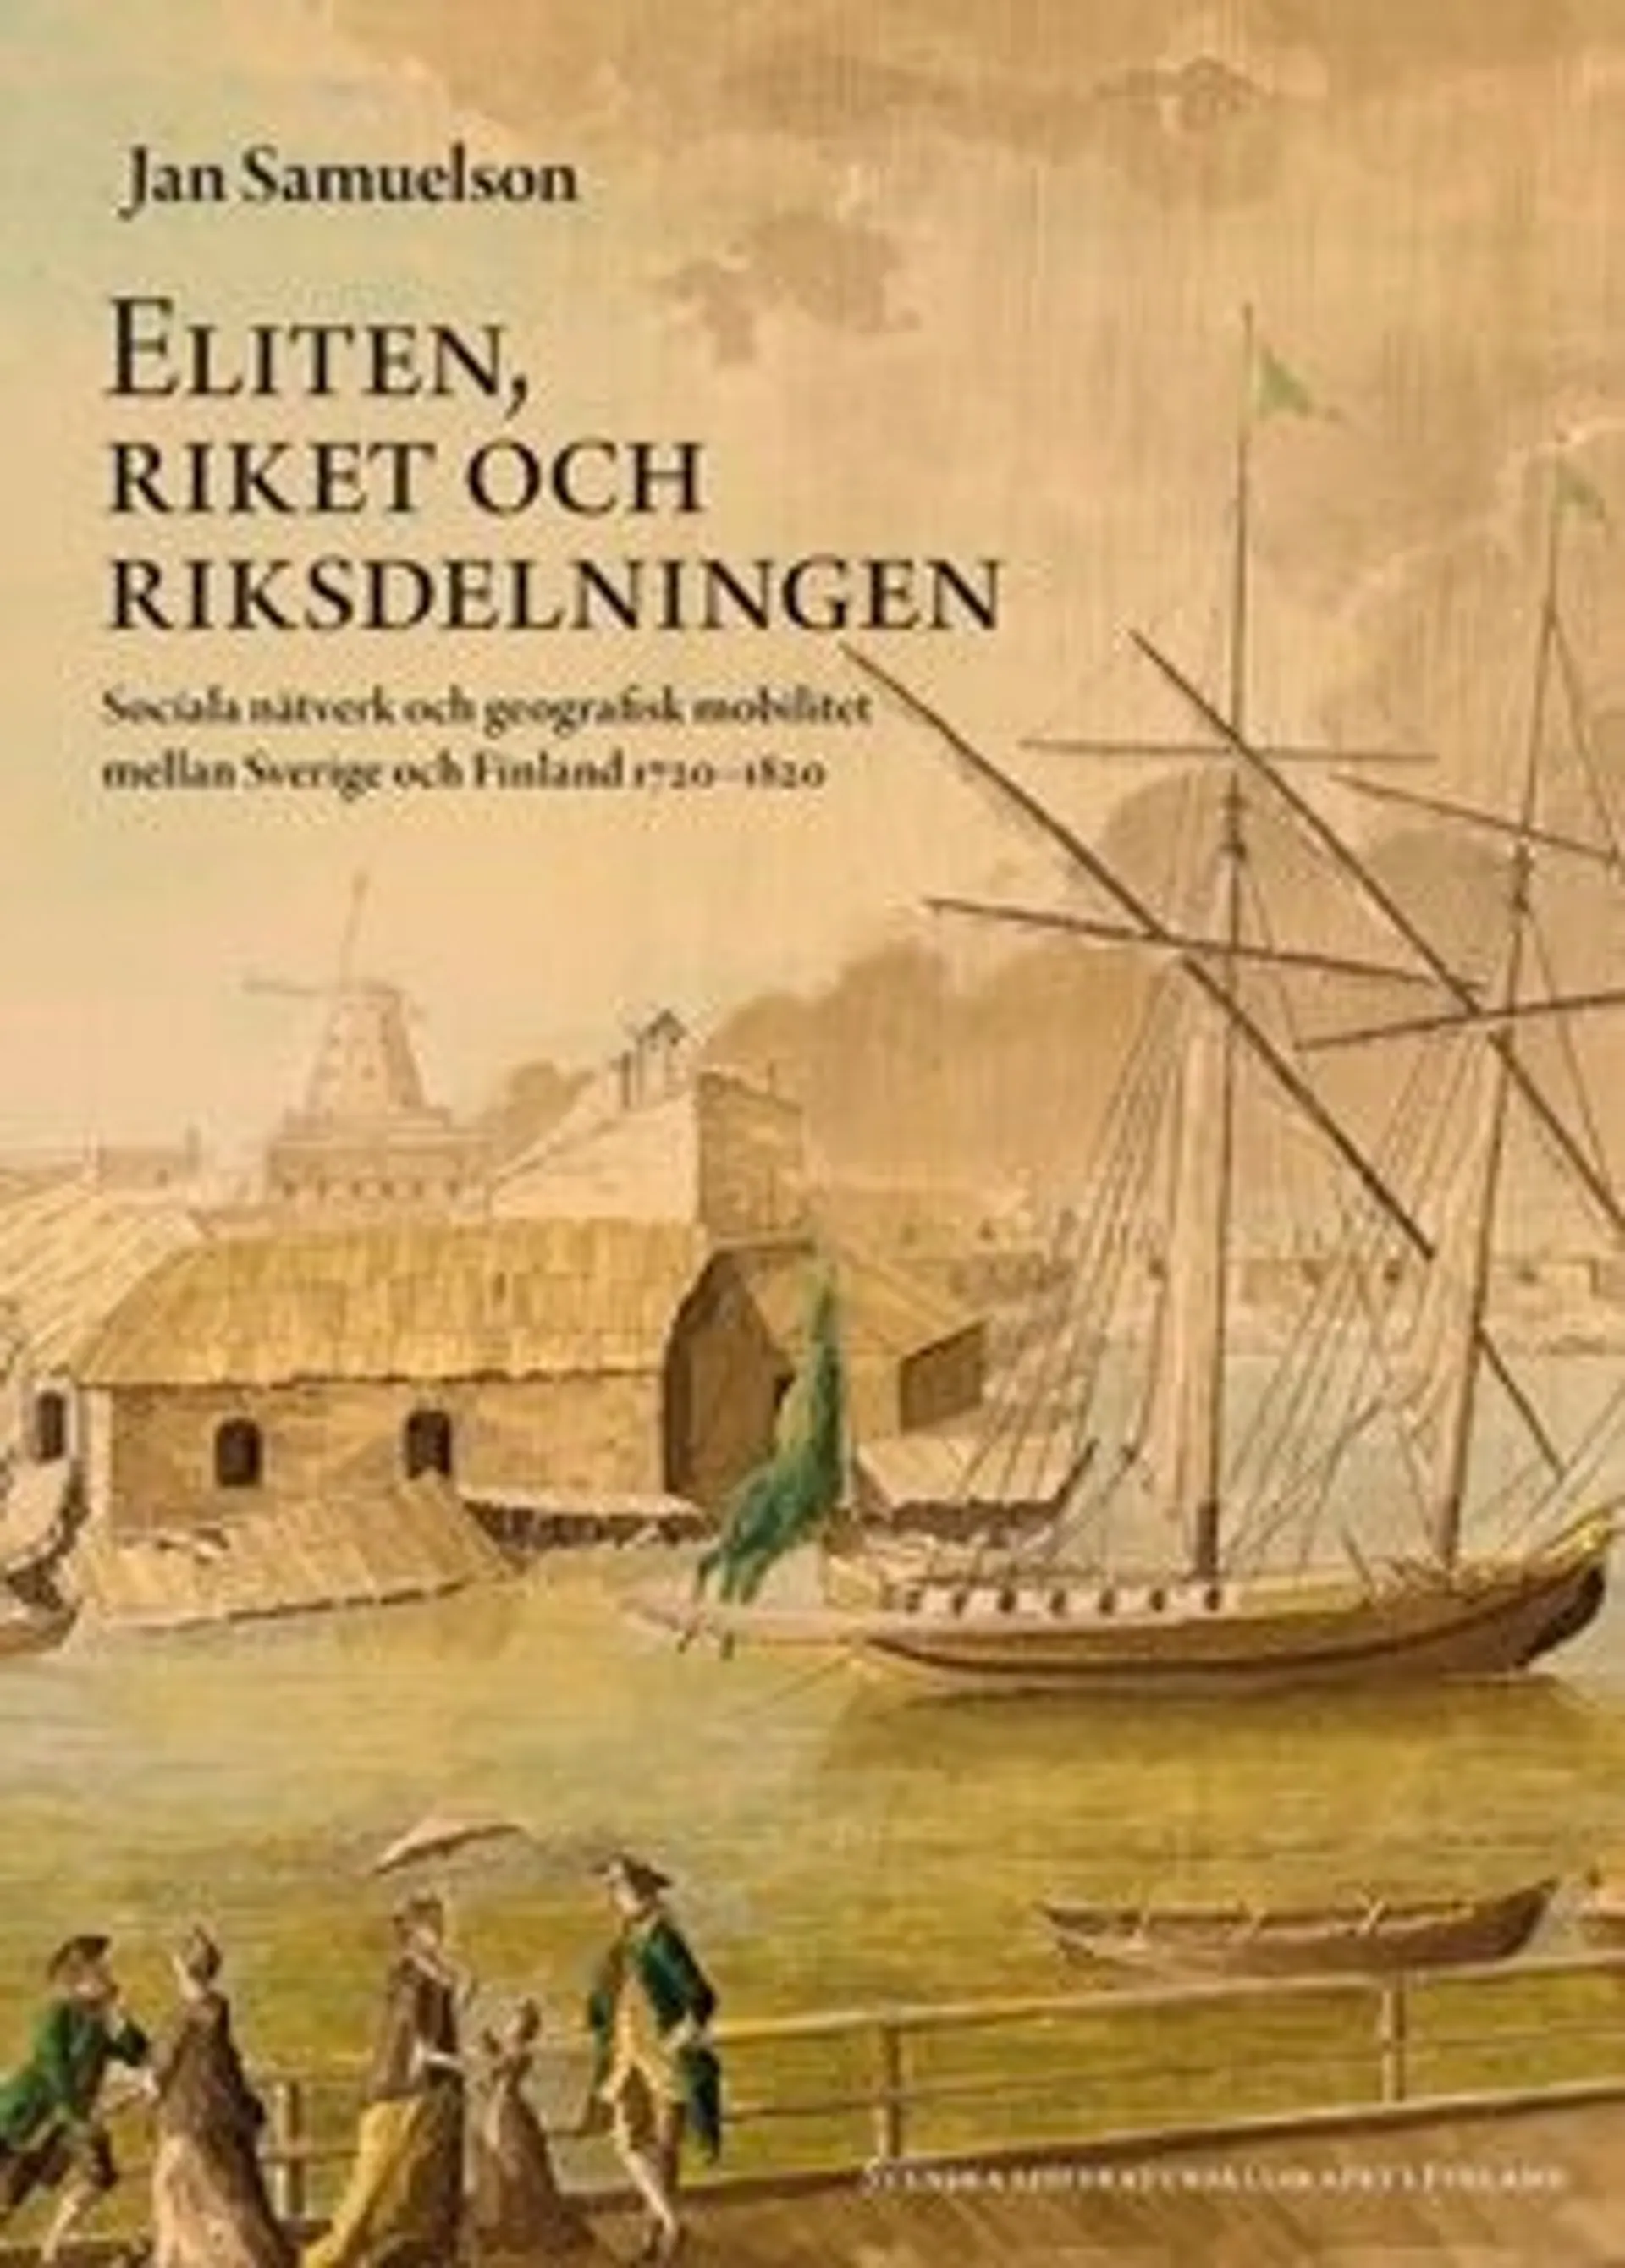 Samuelson, Eliten, riket och riksdelningen - sociala nätverk och geografisk mobilitet mellan Sverige och Finland 1720-1820